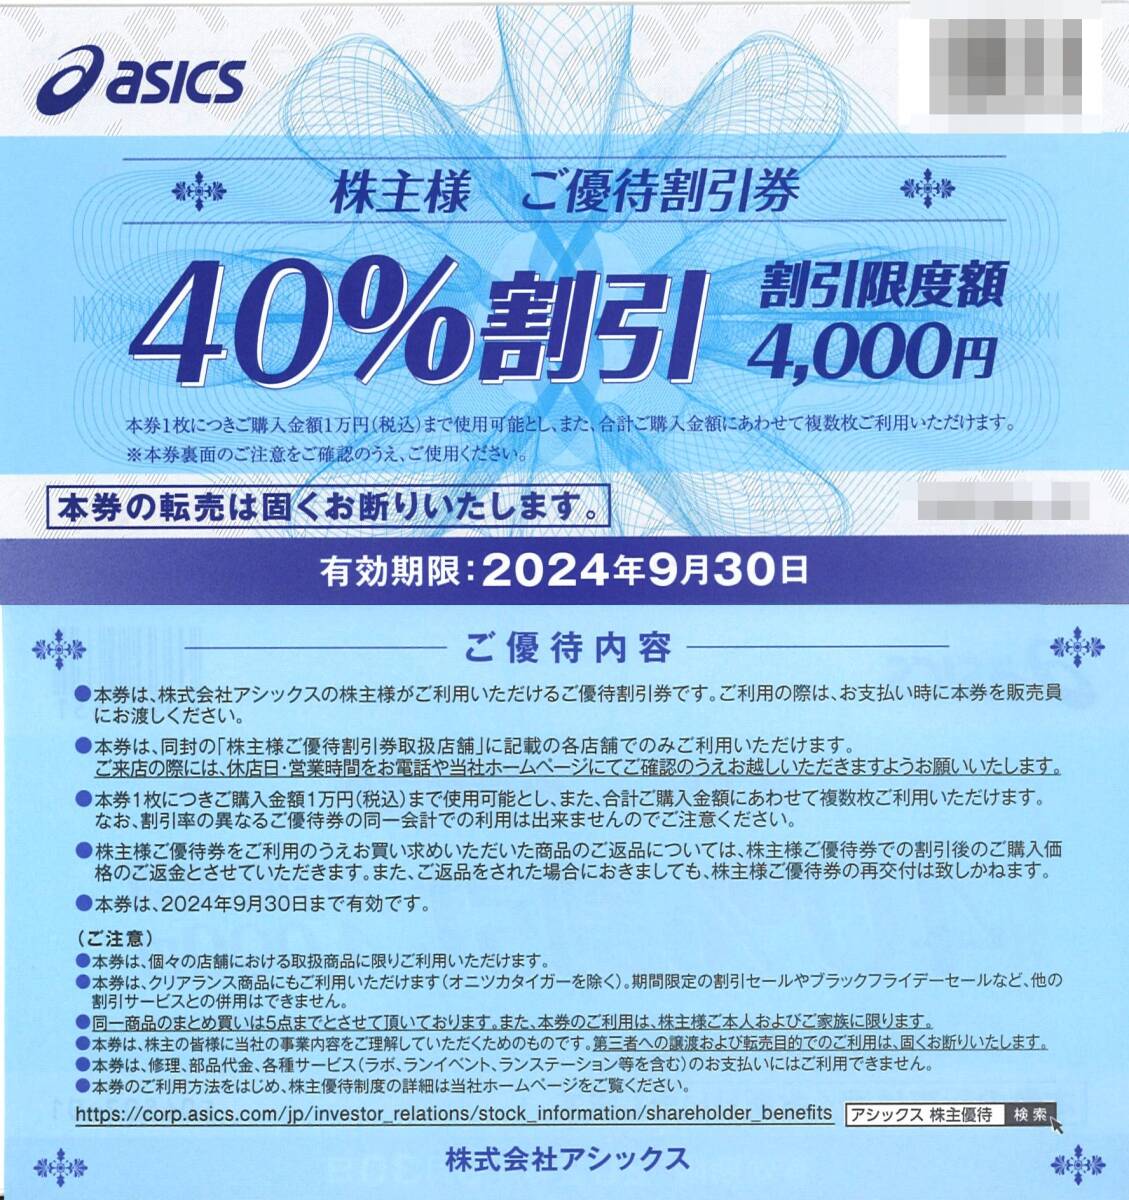 「アシックス asics 株主優待」 40%割引券【1枚】※複数あり / 有効期限2024年9月30日の画像1